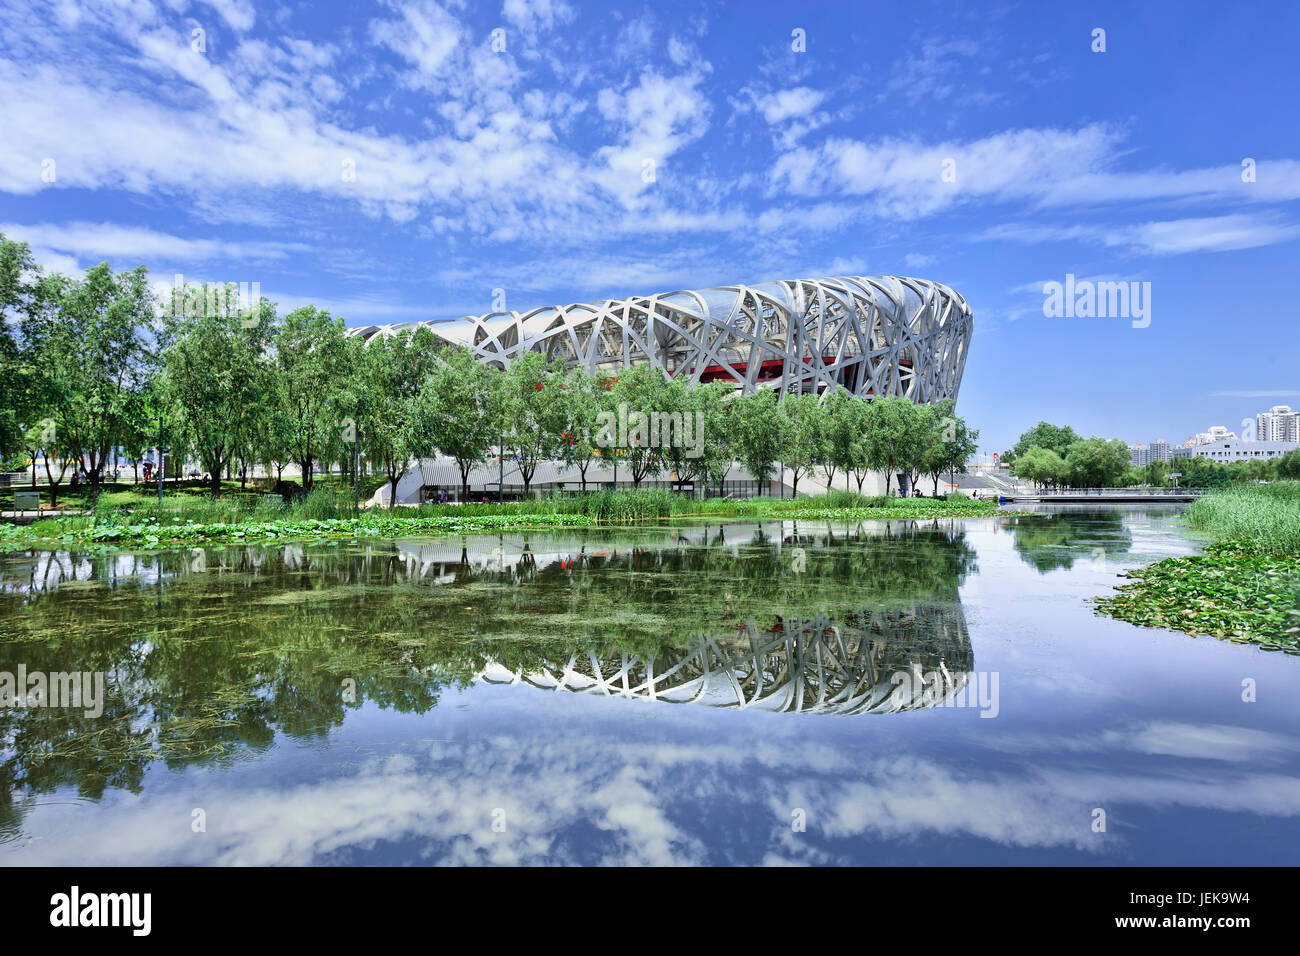 BEIJING-JULIO DE 28. Nido de pájaros espejado en un estanque. El Bird's Nest es un estadio en Beijing, China, diseñado para su uso durante las Olimpiadas de Verano de 2008. Foto de stock